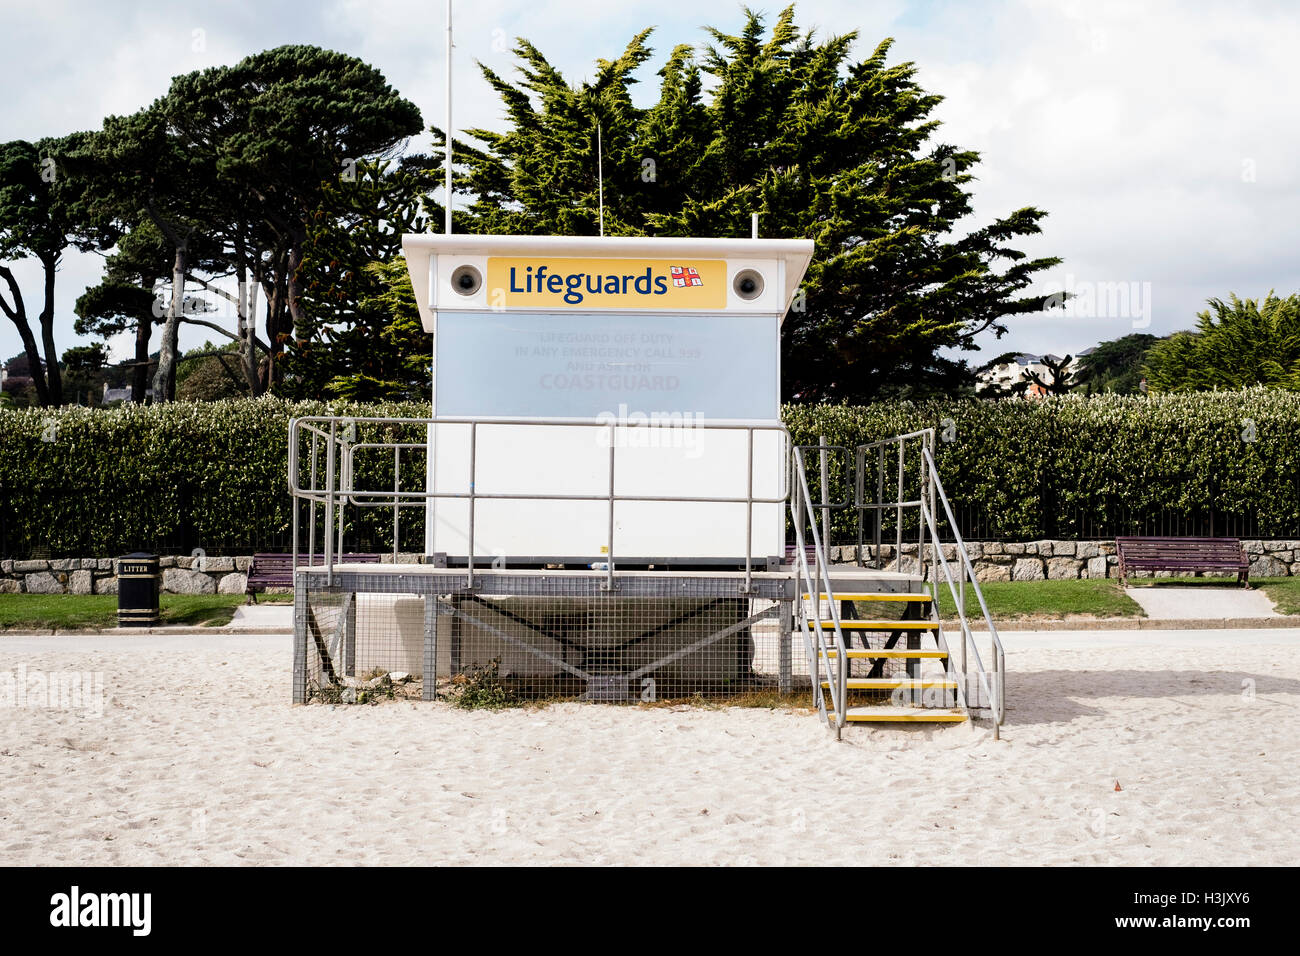 RNIL lifeguard station à Falmouth - Plage de Gyllyngvase est maintenant fermé pour l'hiver. Le 05 octobre 2016 Banque D'Images